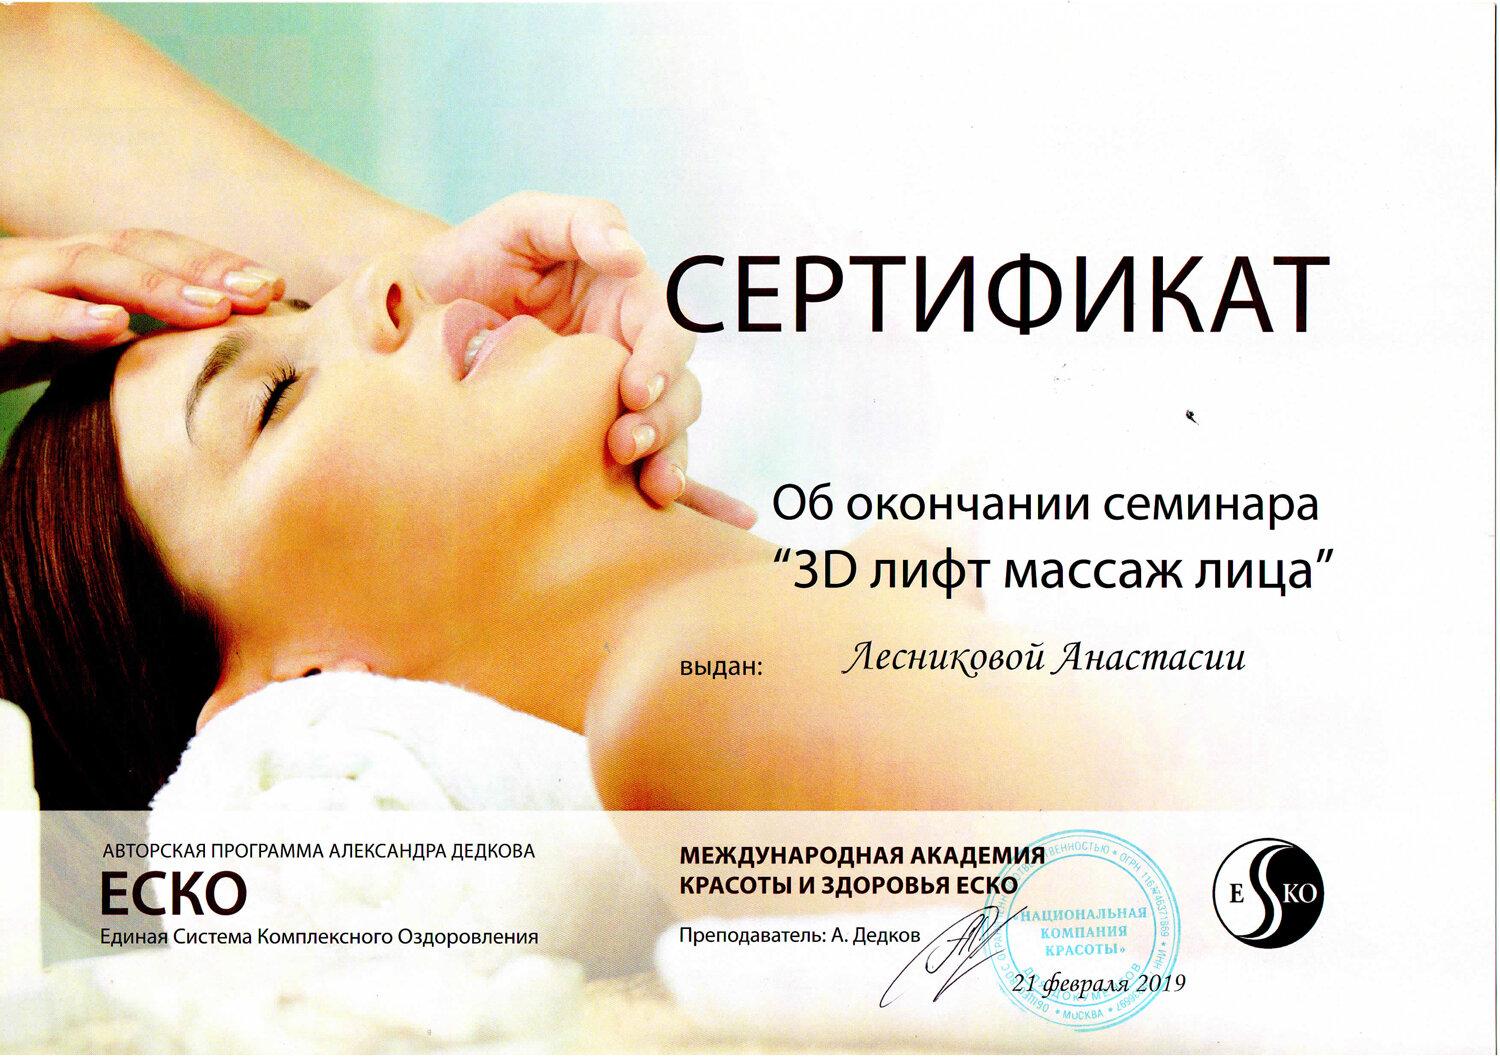 Сертификат на массаж лица